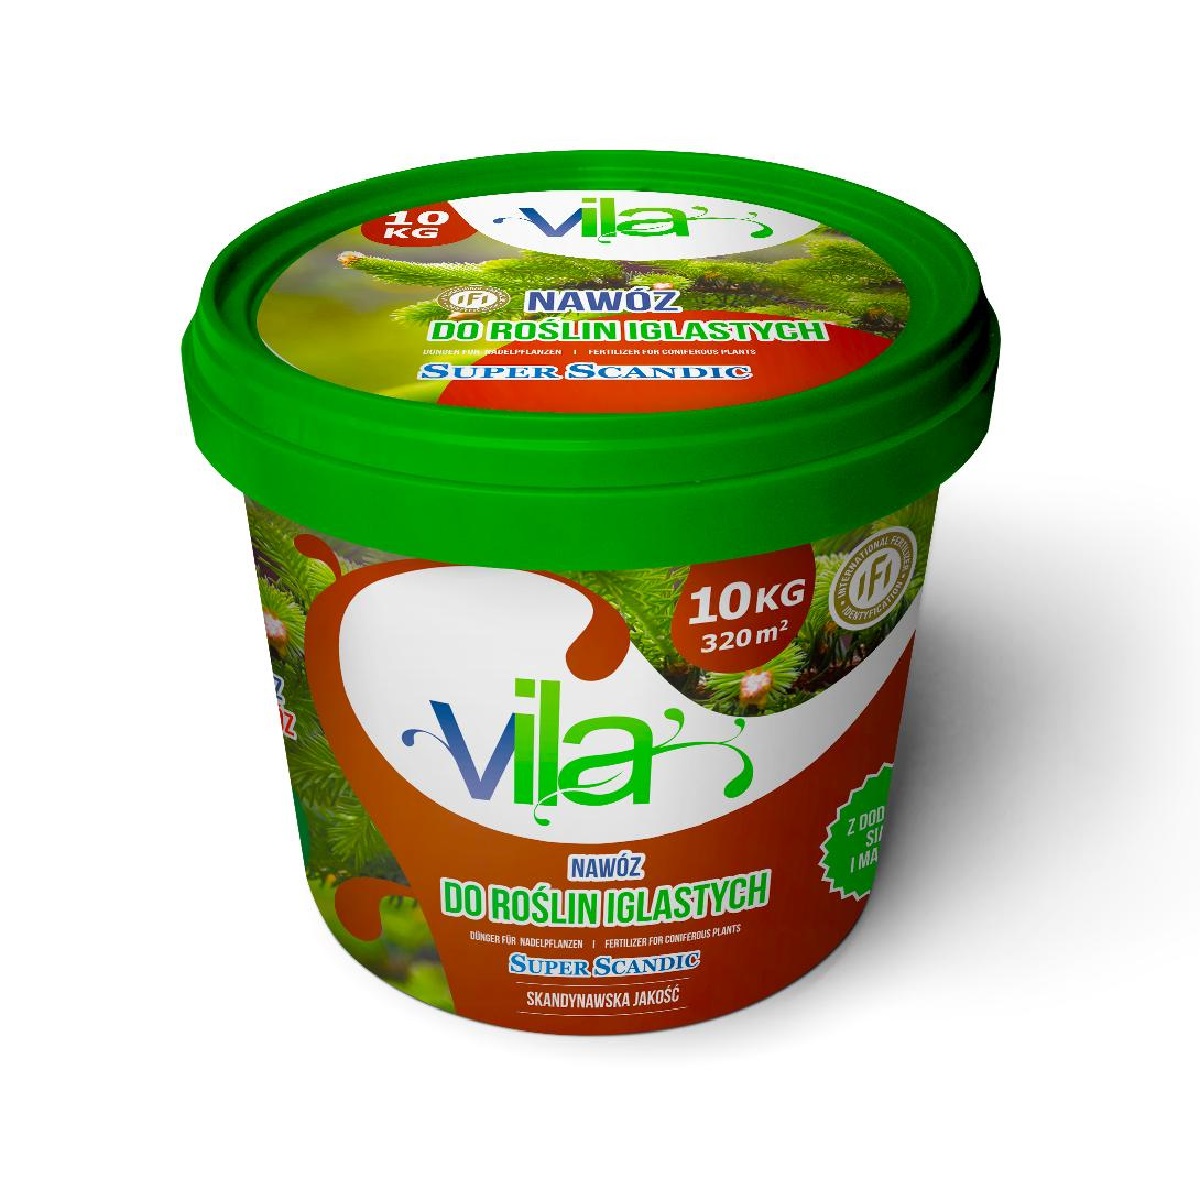 Удобрение Yara Vila Super Scandic для хвойных растений 10 кг ведро / Яра Вила Нордик Суприм